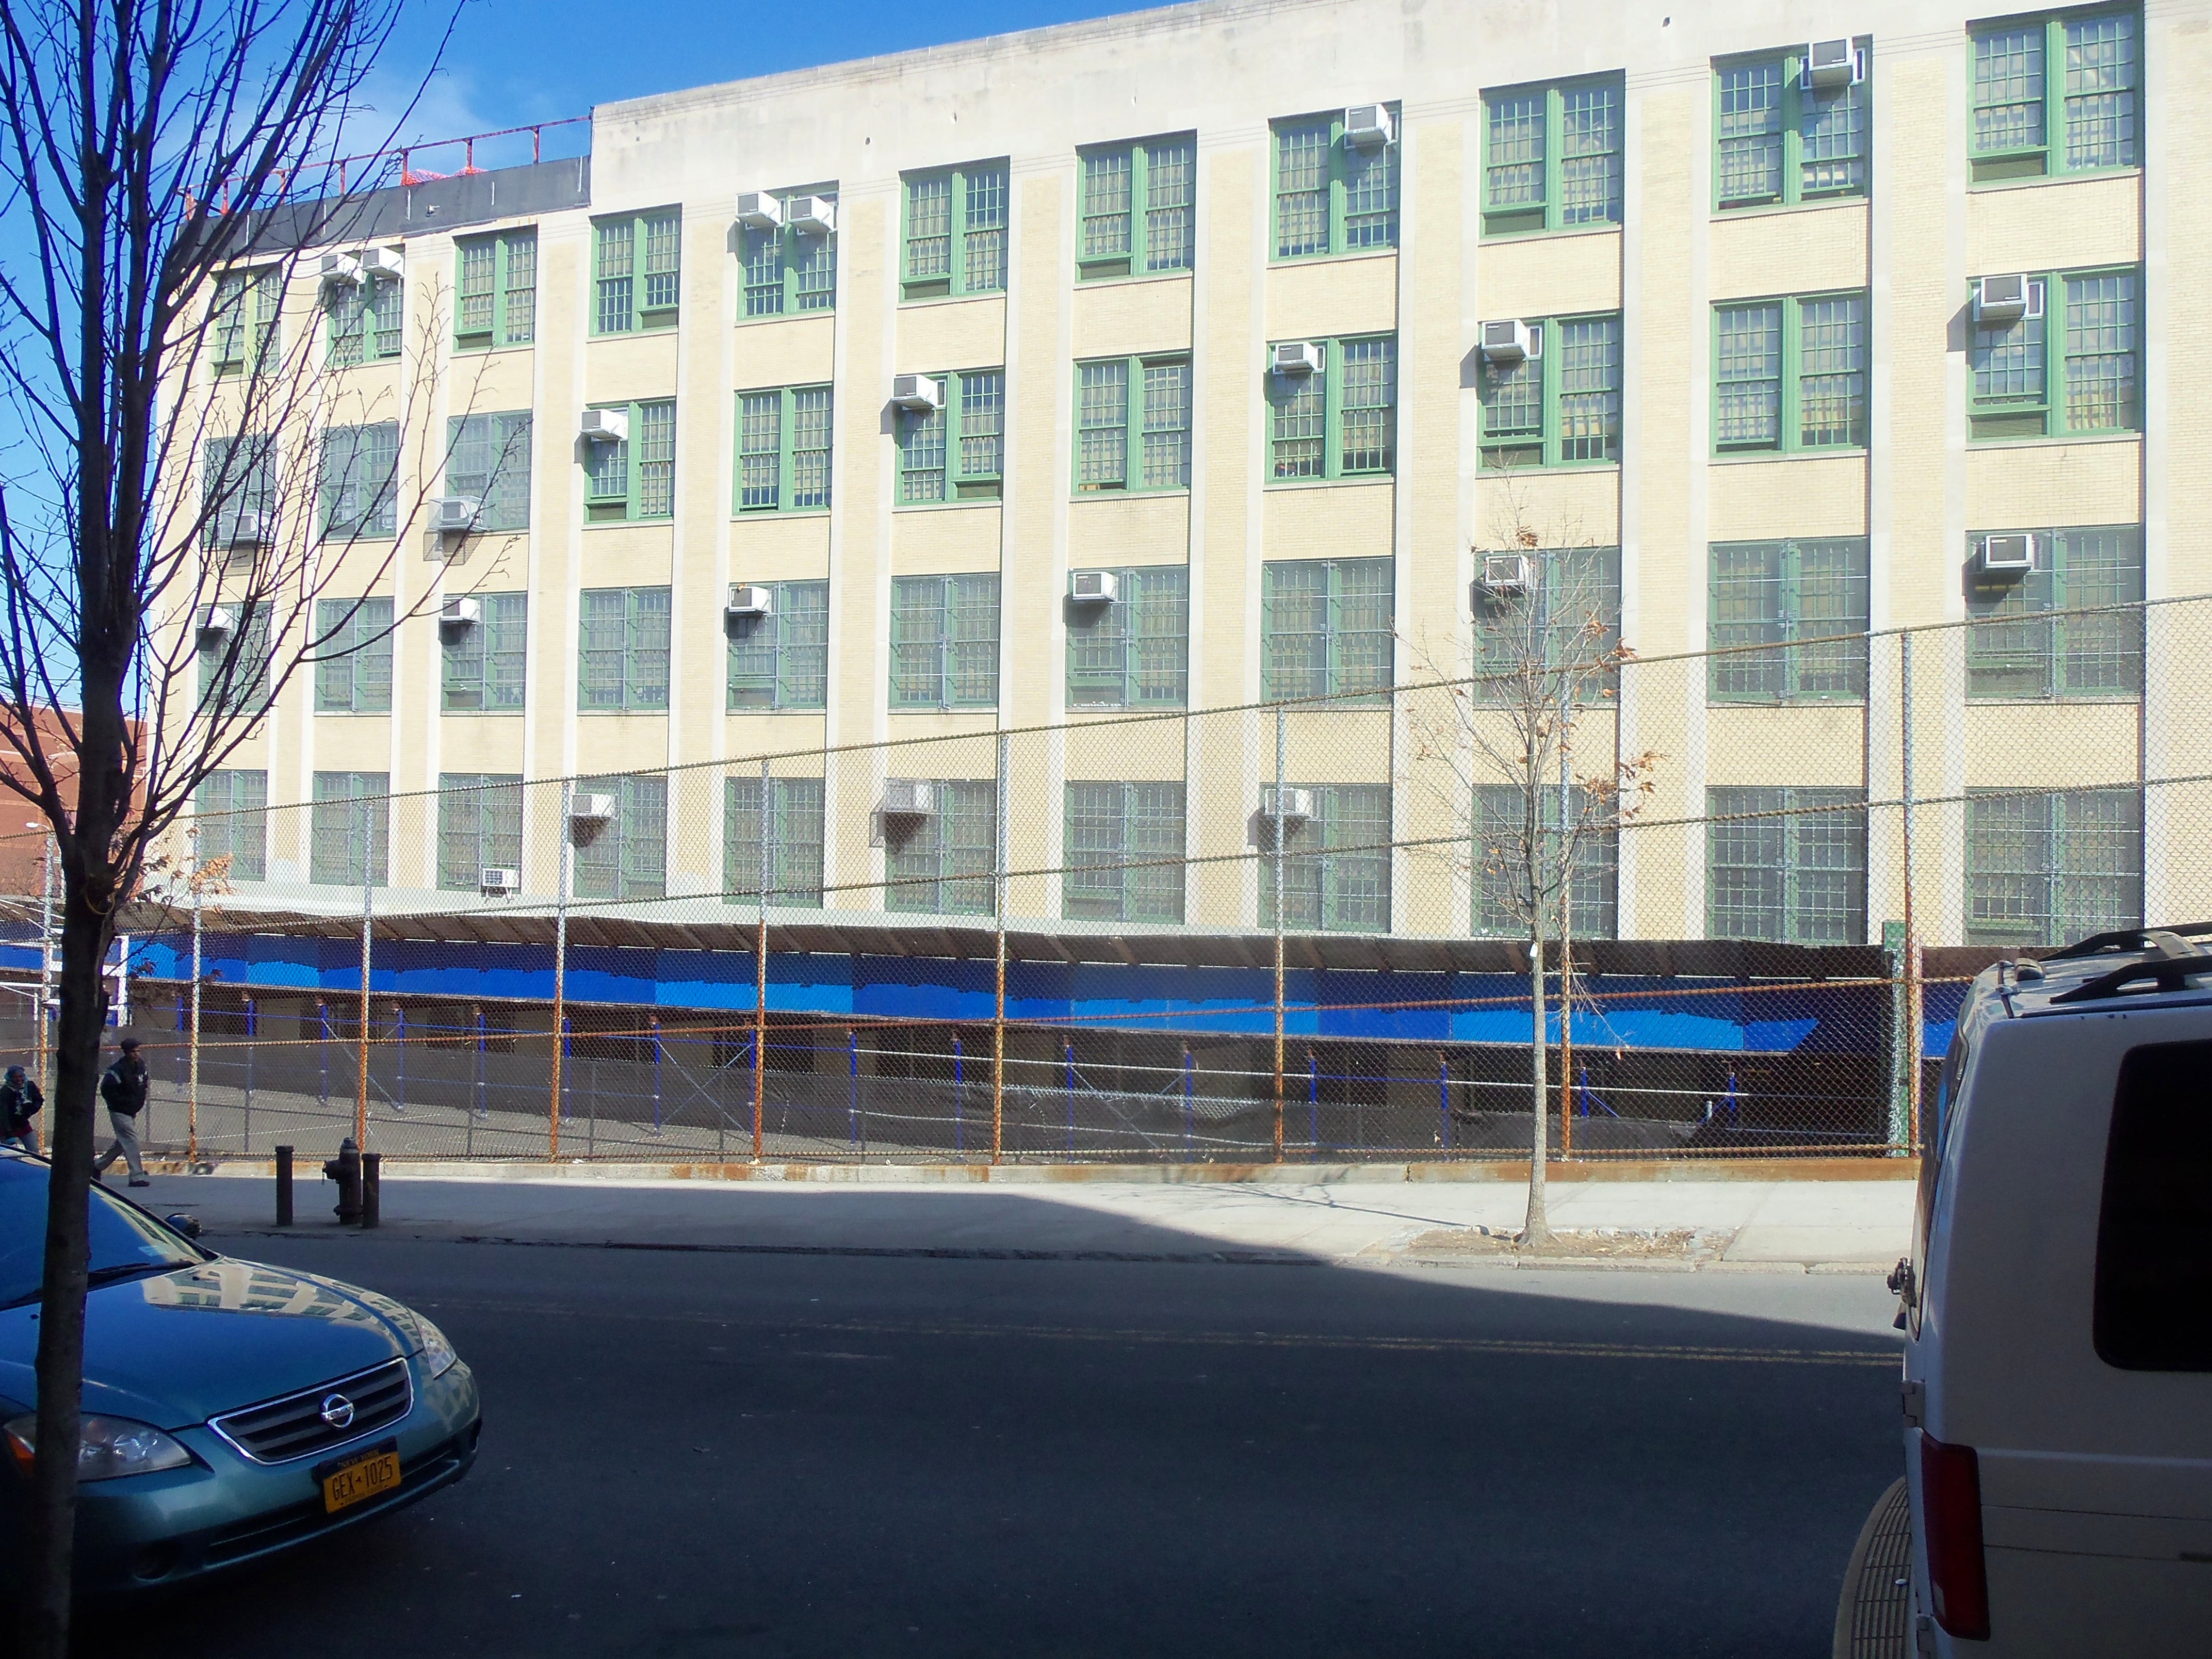 school on East 176th Street